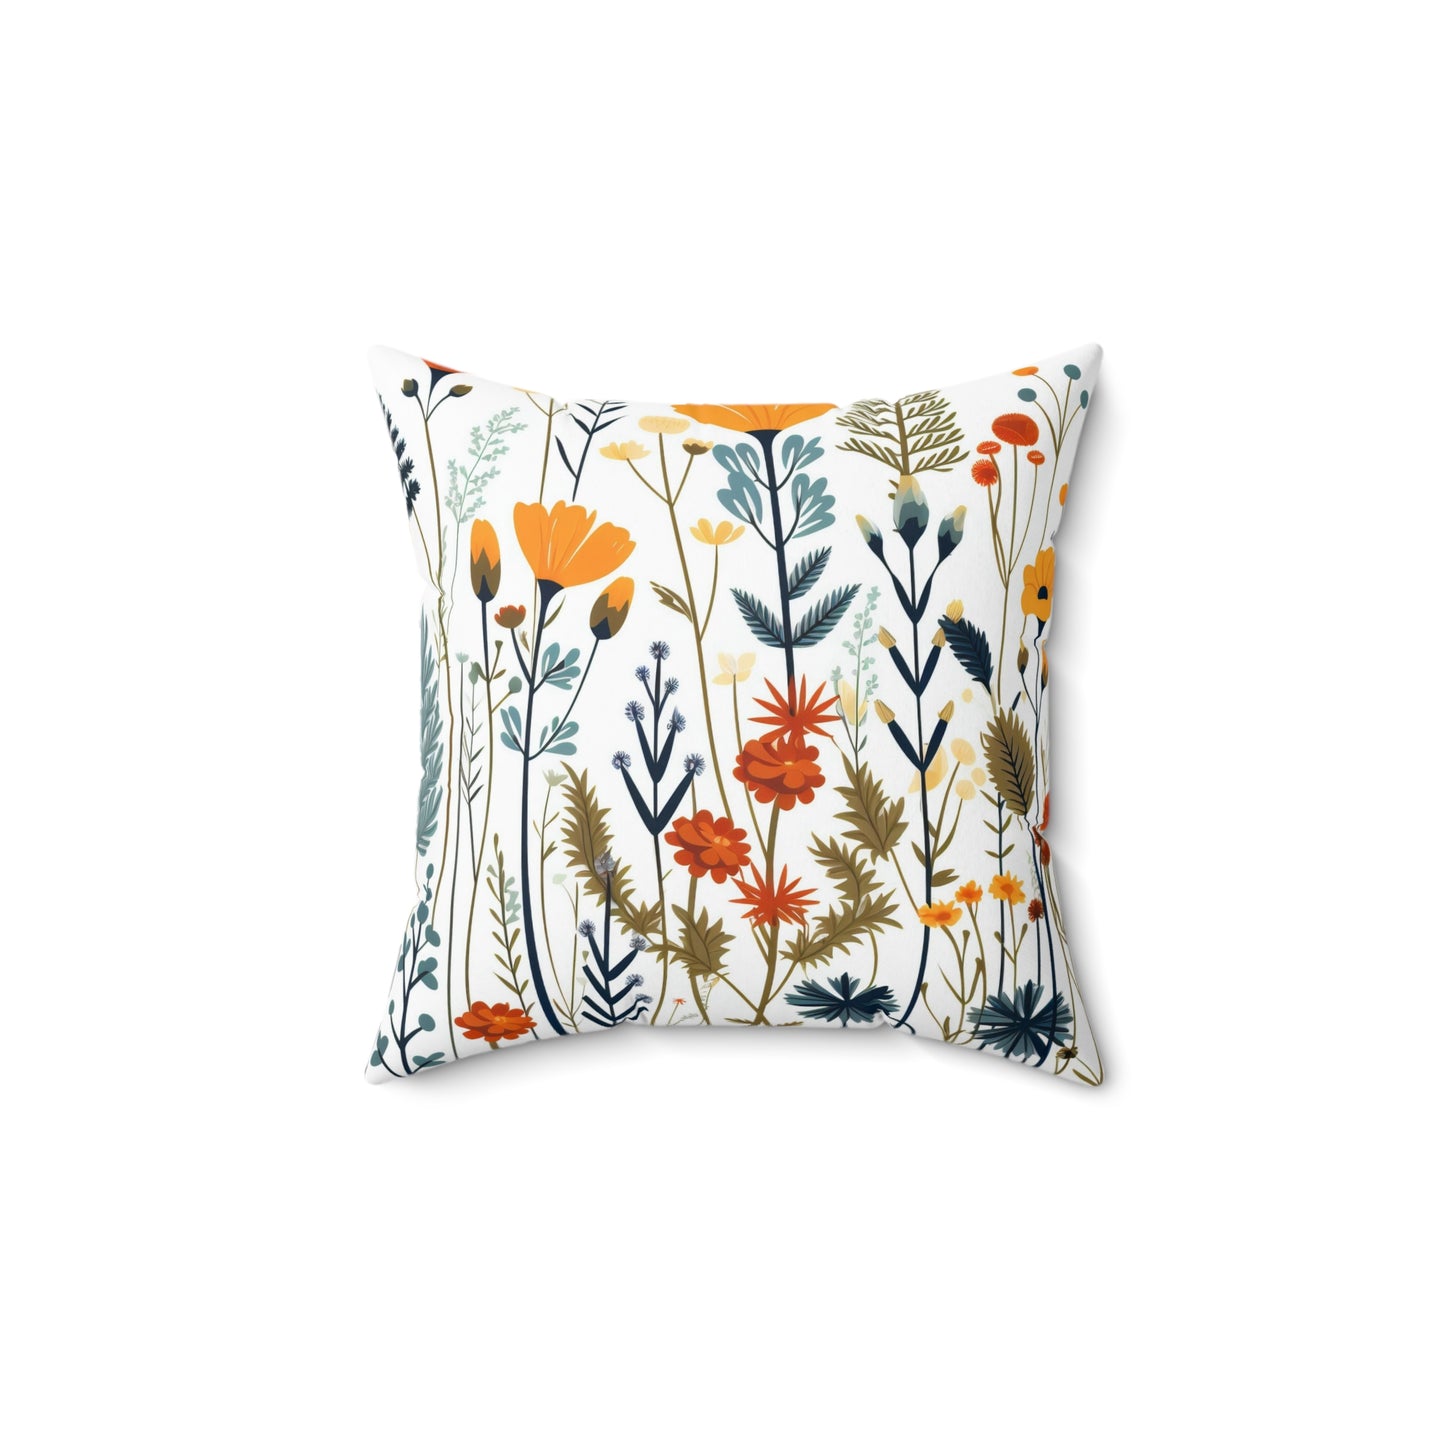 Folk Art Floral Pillow, Folk Art Flowers Cushion, Scandinavian Floral Pillow, Nordic Decorative Pillow, Swedish Pillow, Concealed Zipper